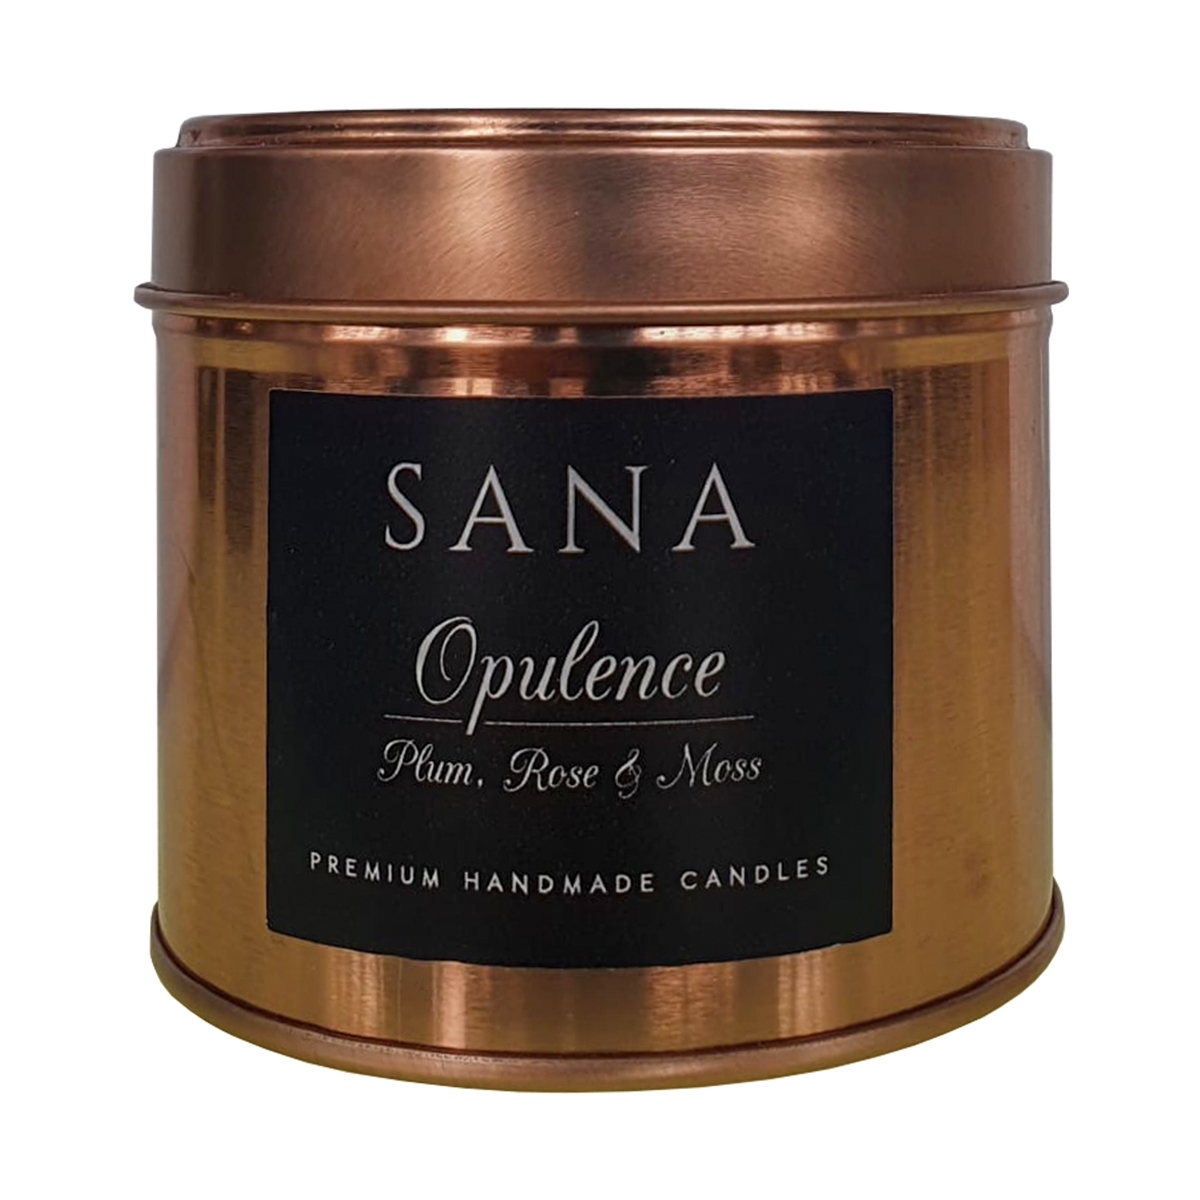 Opulence Sana Perfumes, Profumo Per Ambienti, Arada Perfumes